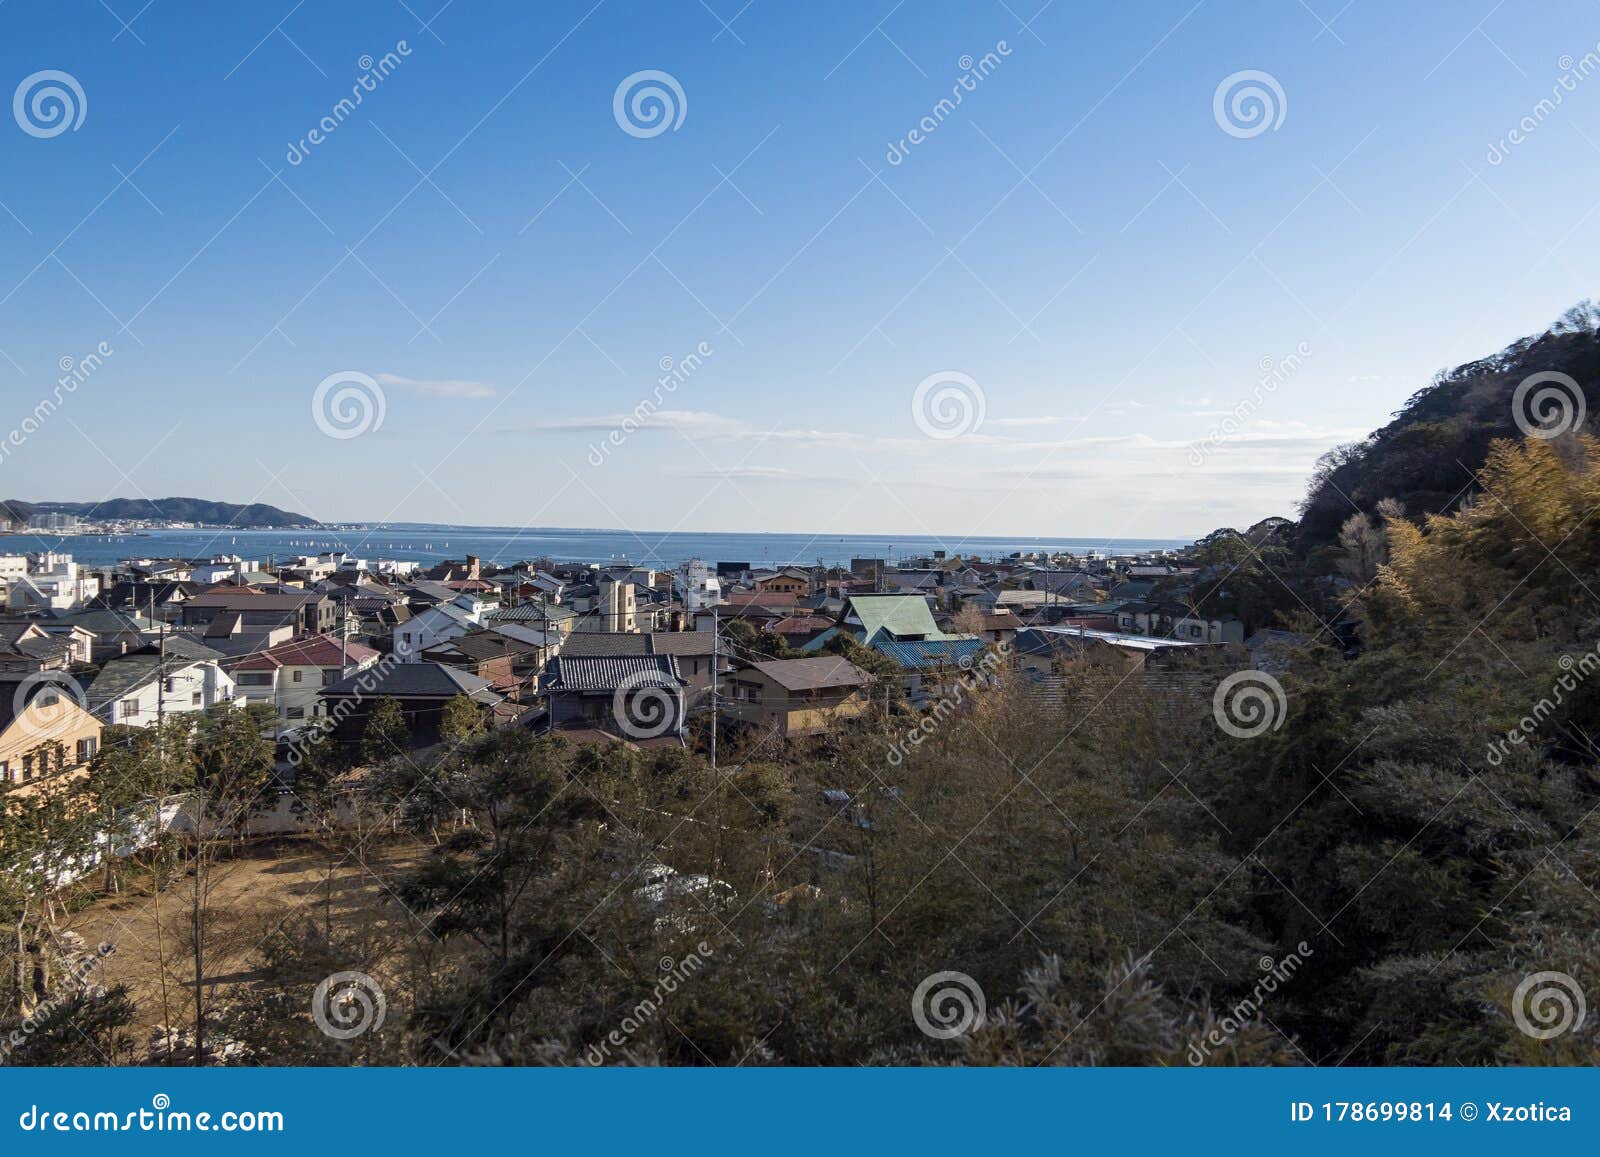 Japans Huis In Kamakura Redactionele Stock Afbeelding. Image Of Hemel -  178699814